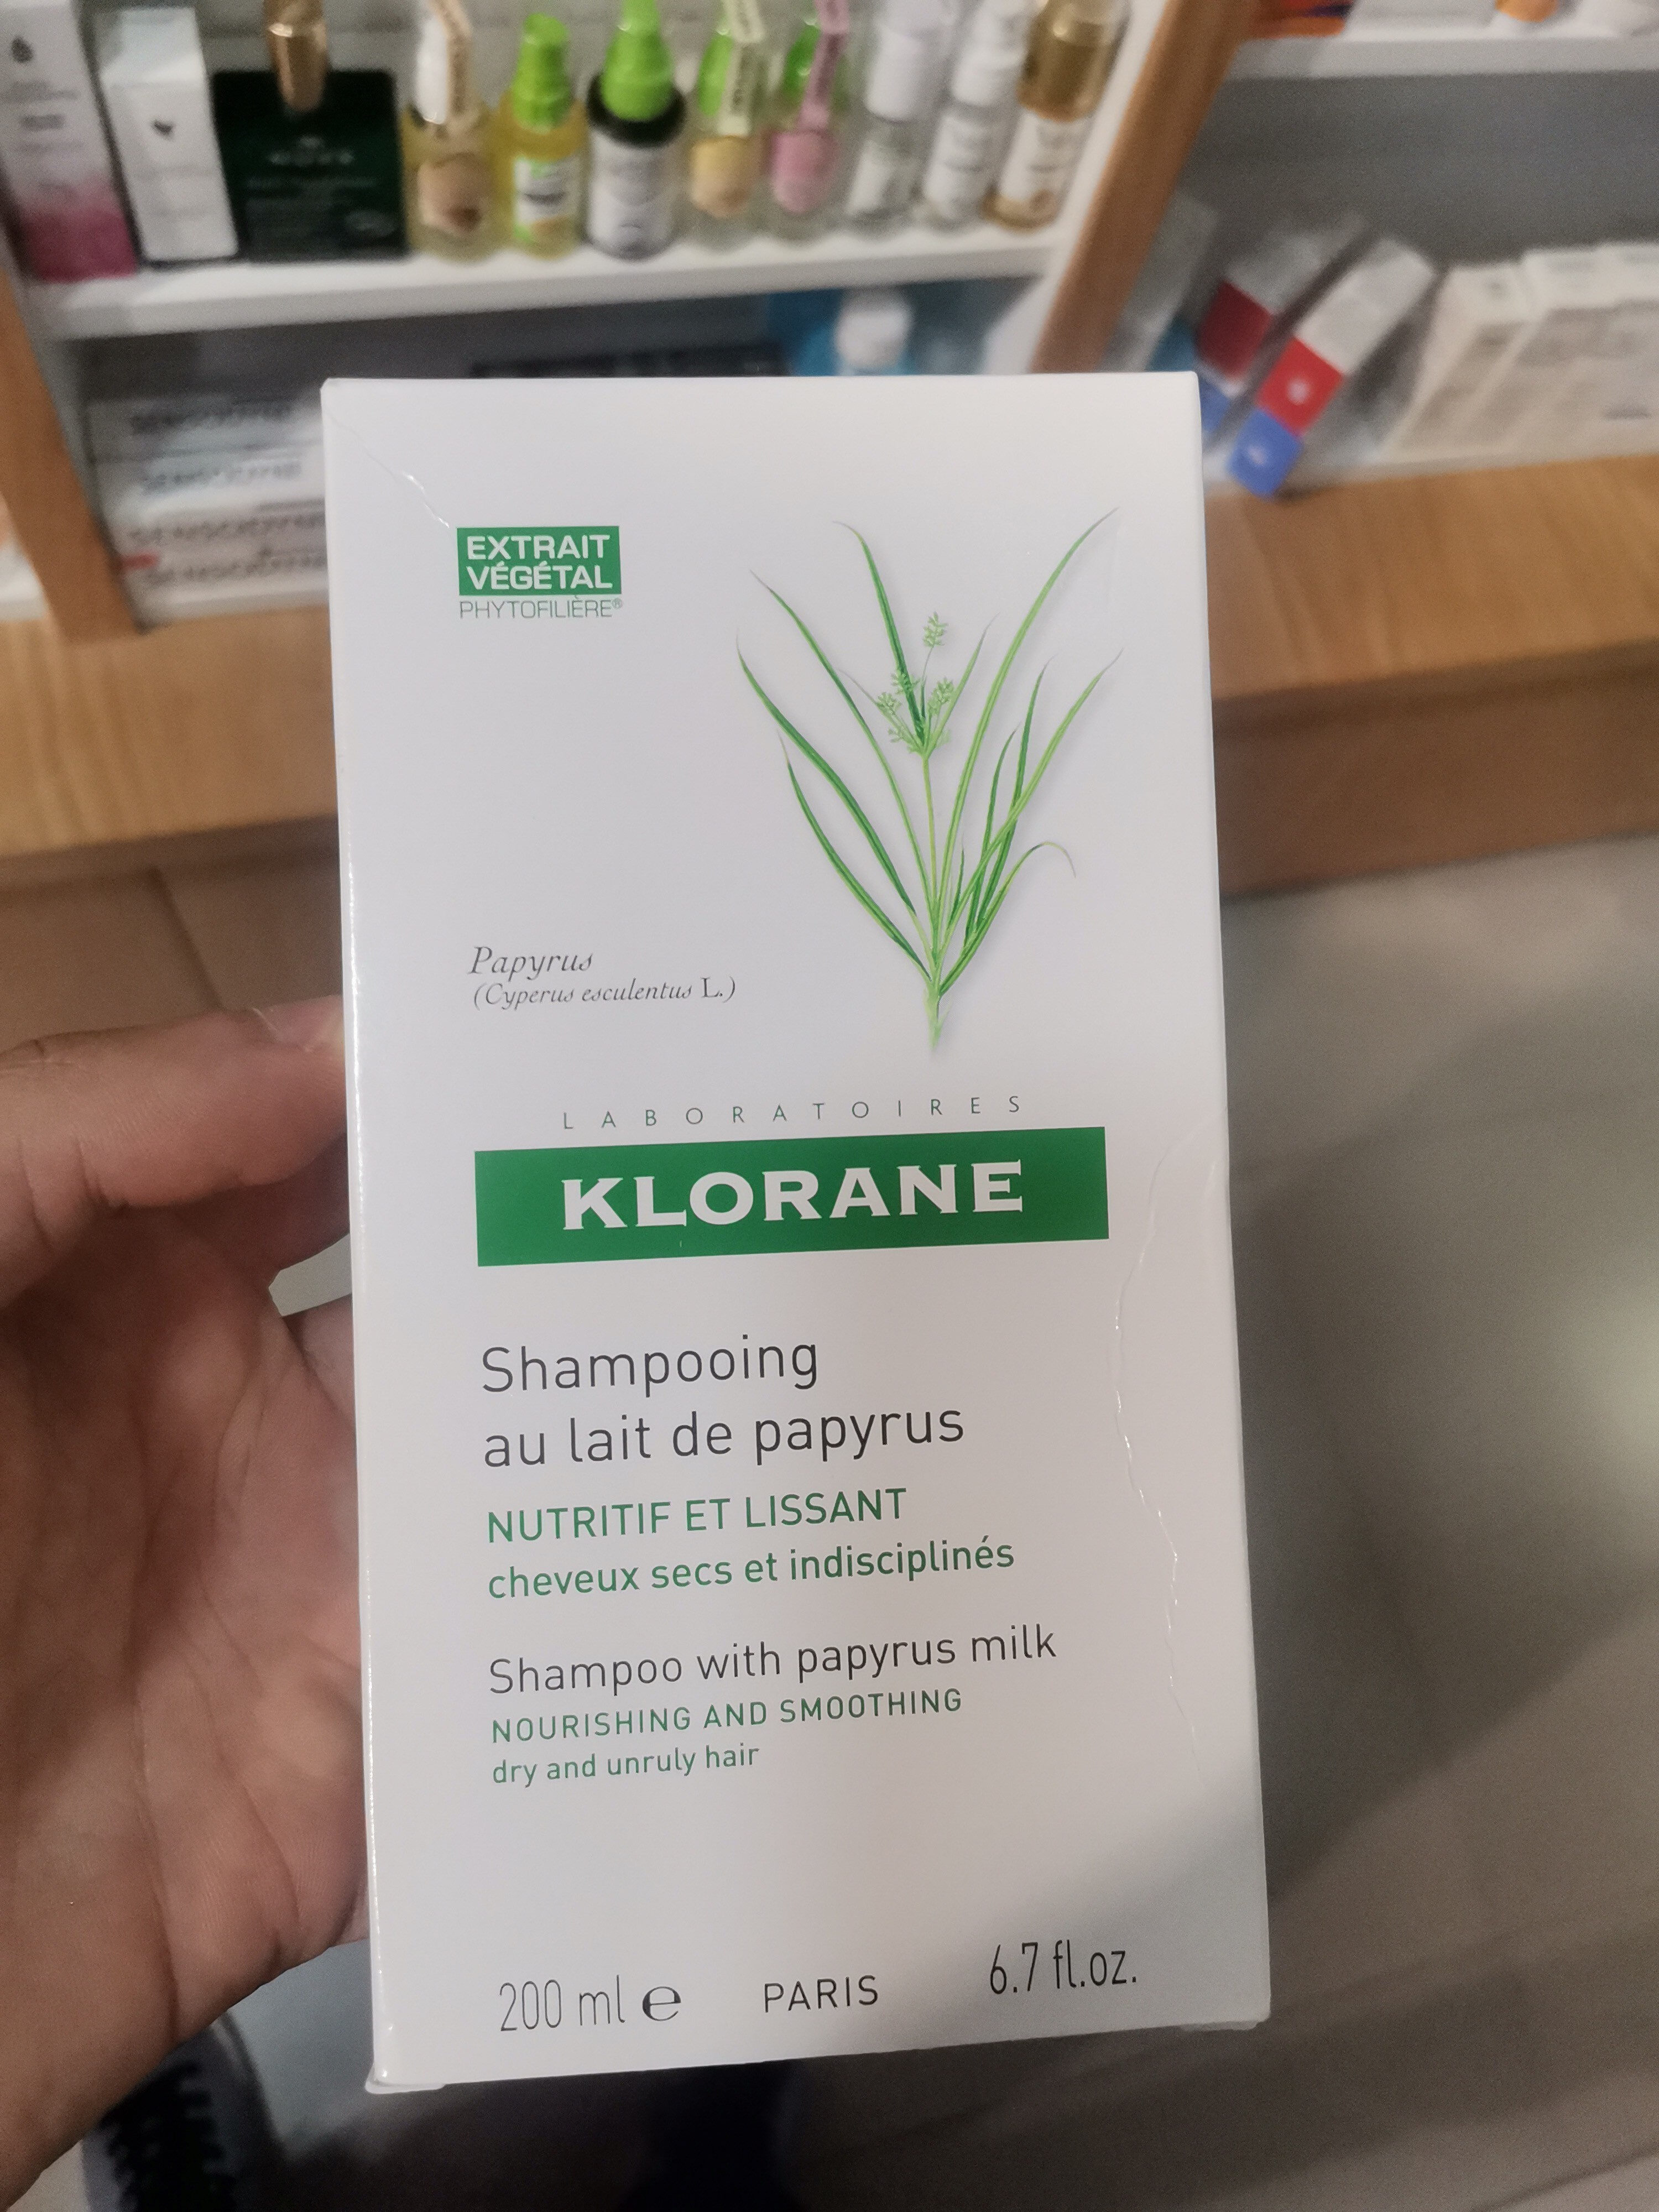 Klorane Shampoing au lait de papyrus - Product - fr